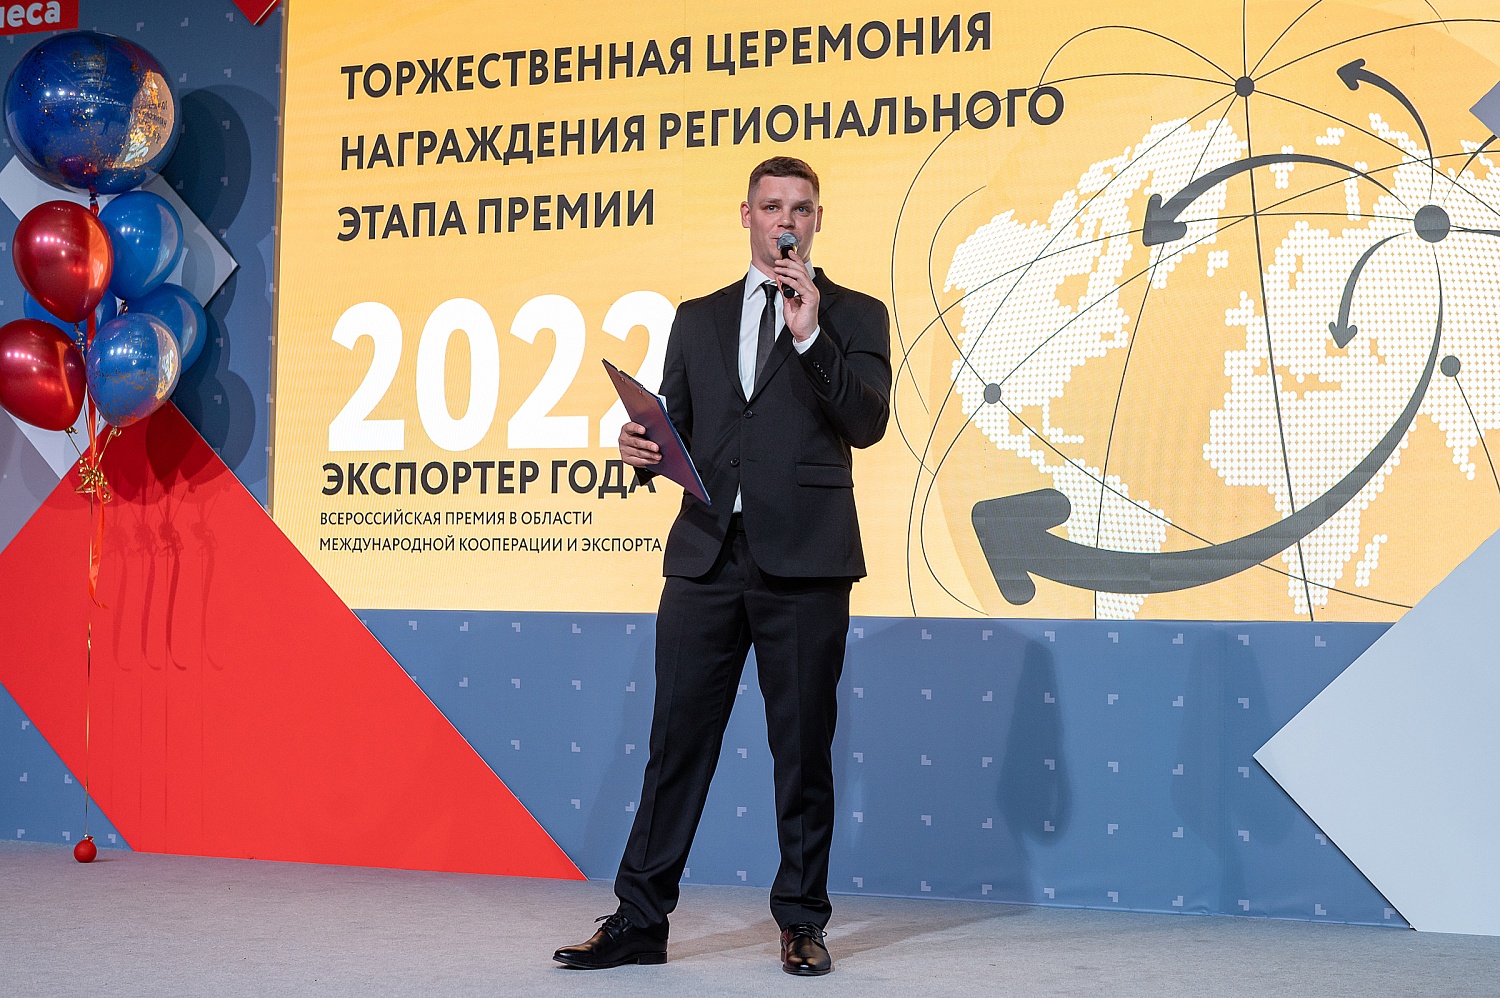 Состоялась церемония награждения победителей регионального этапа Всероссийского конкурса «Экспортер года-2022»